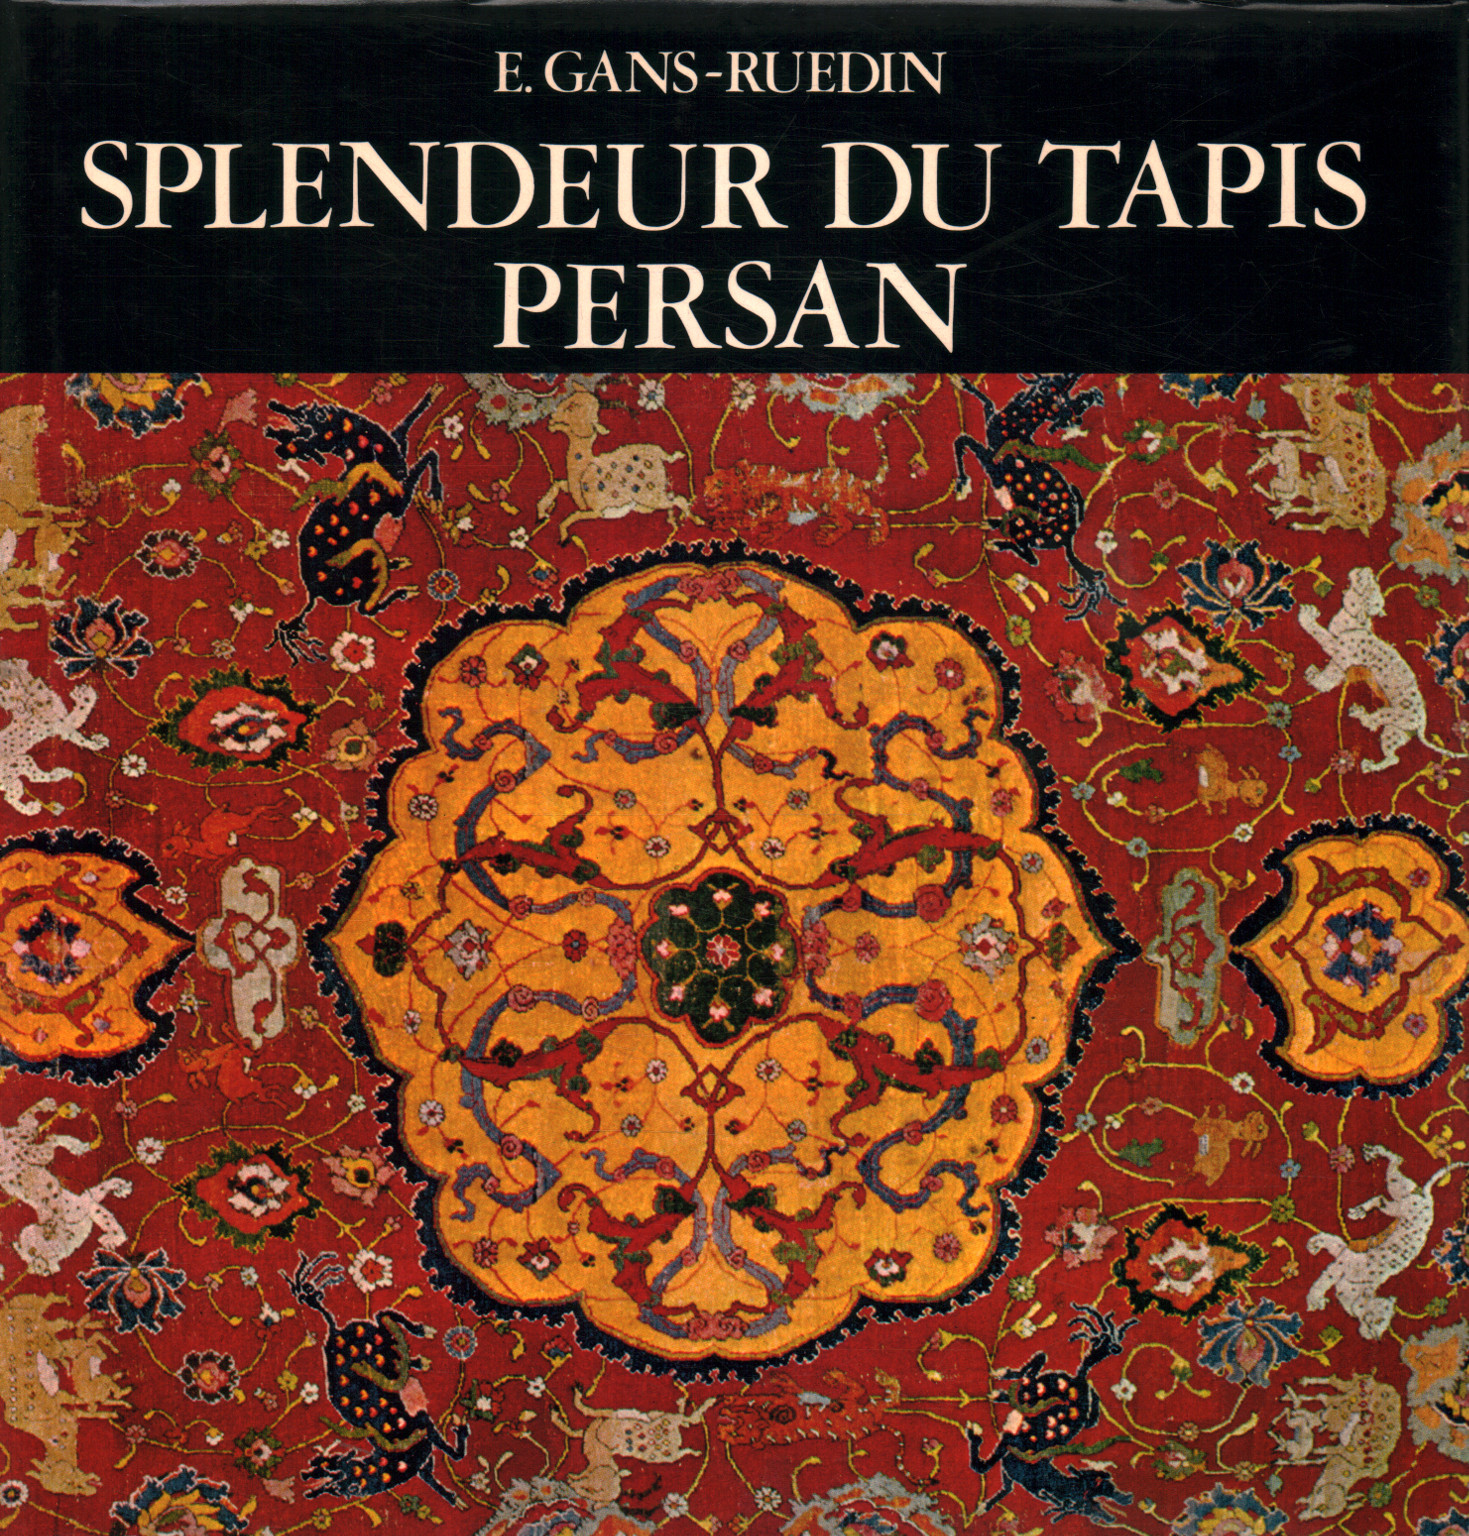 Splendor du tapis persan, E. Gans - Ruedin